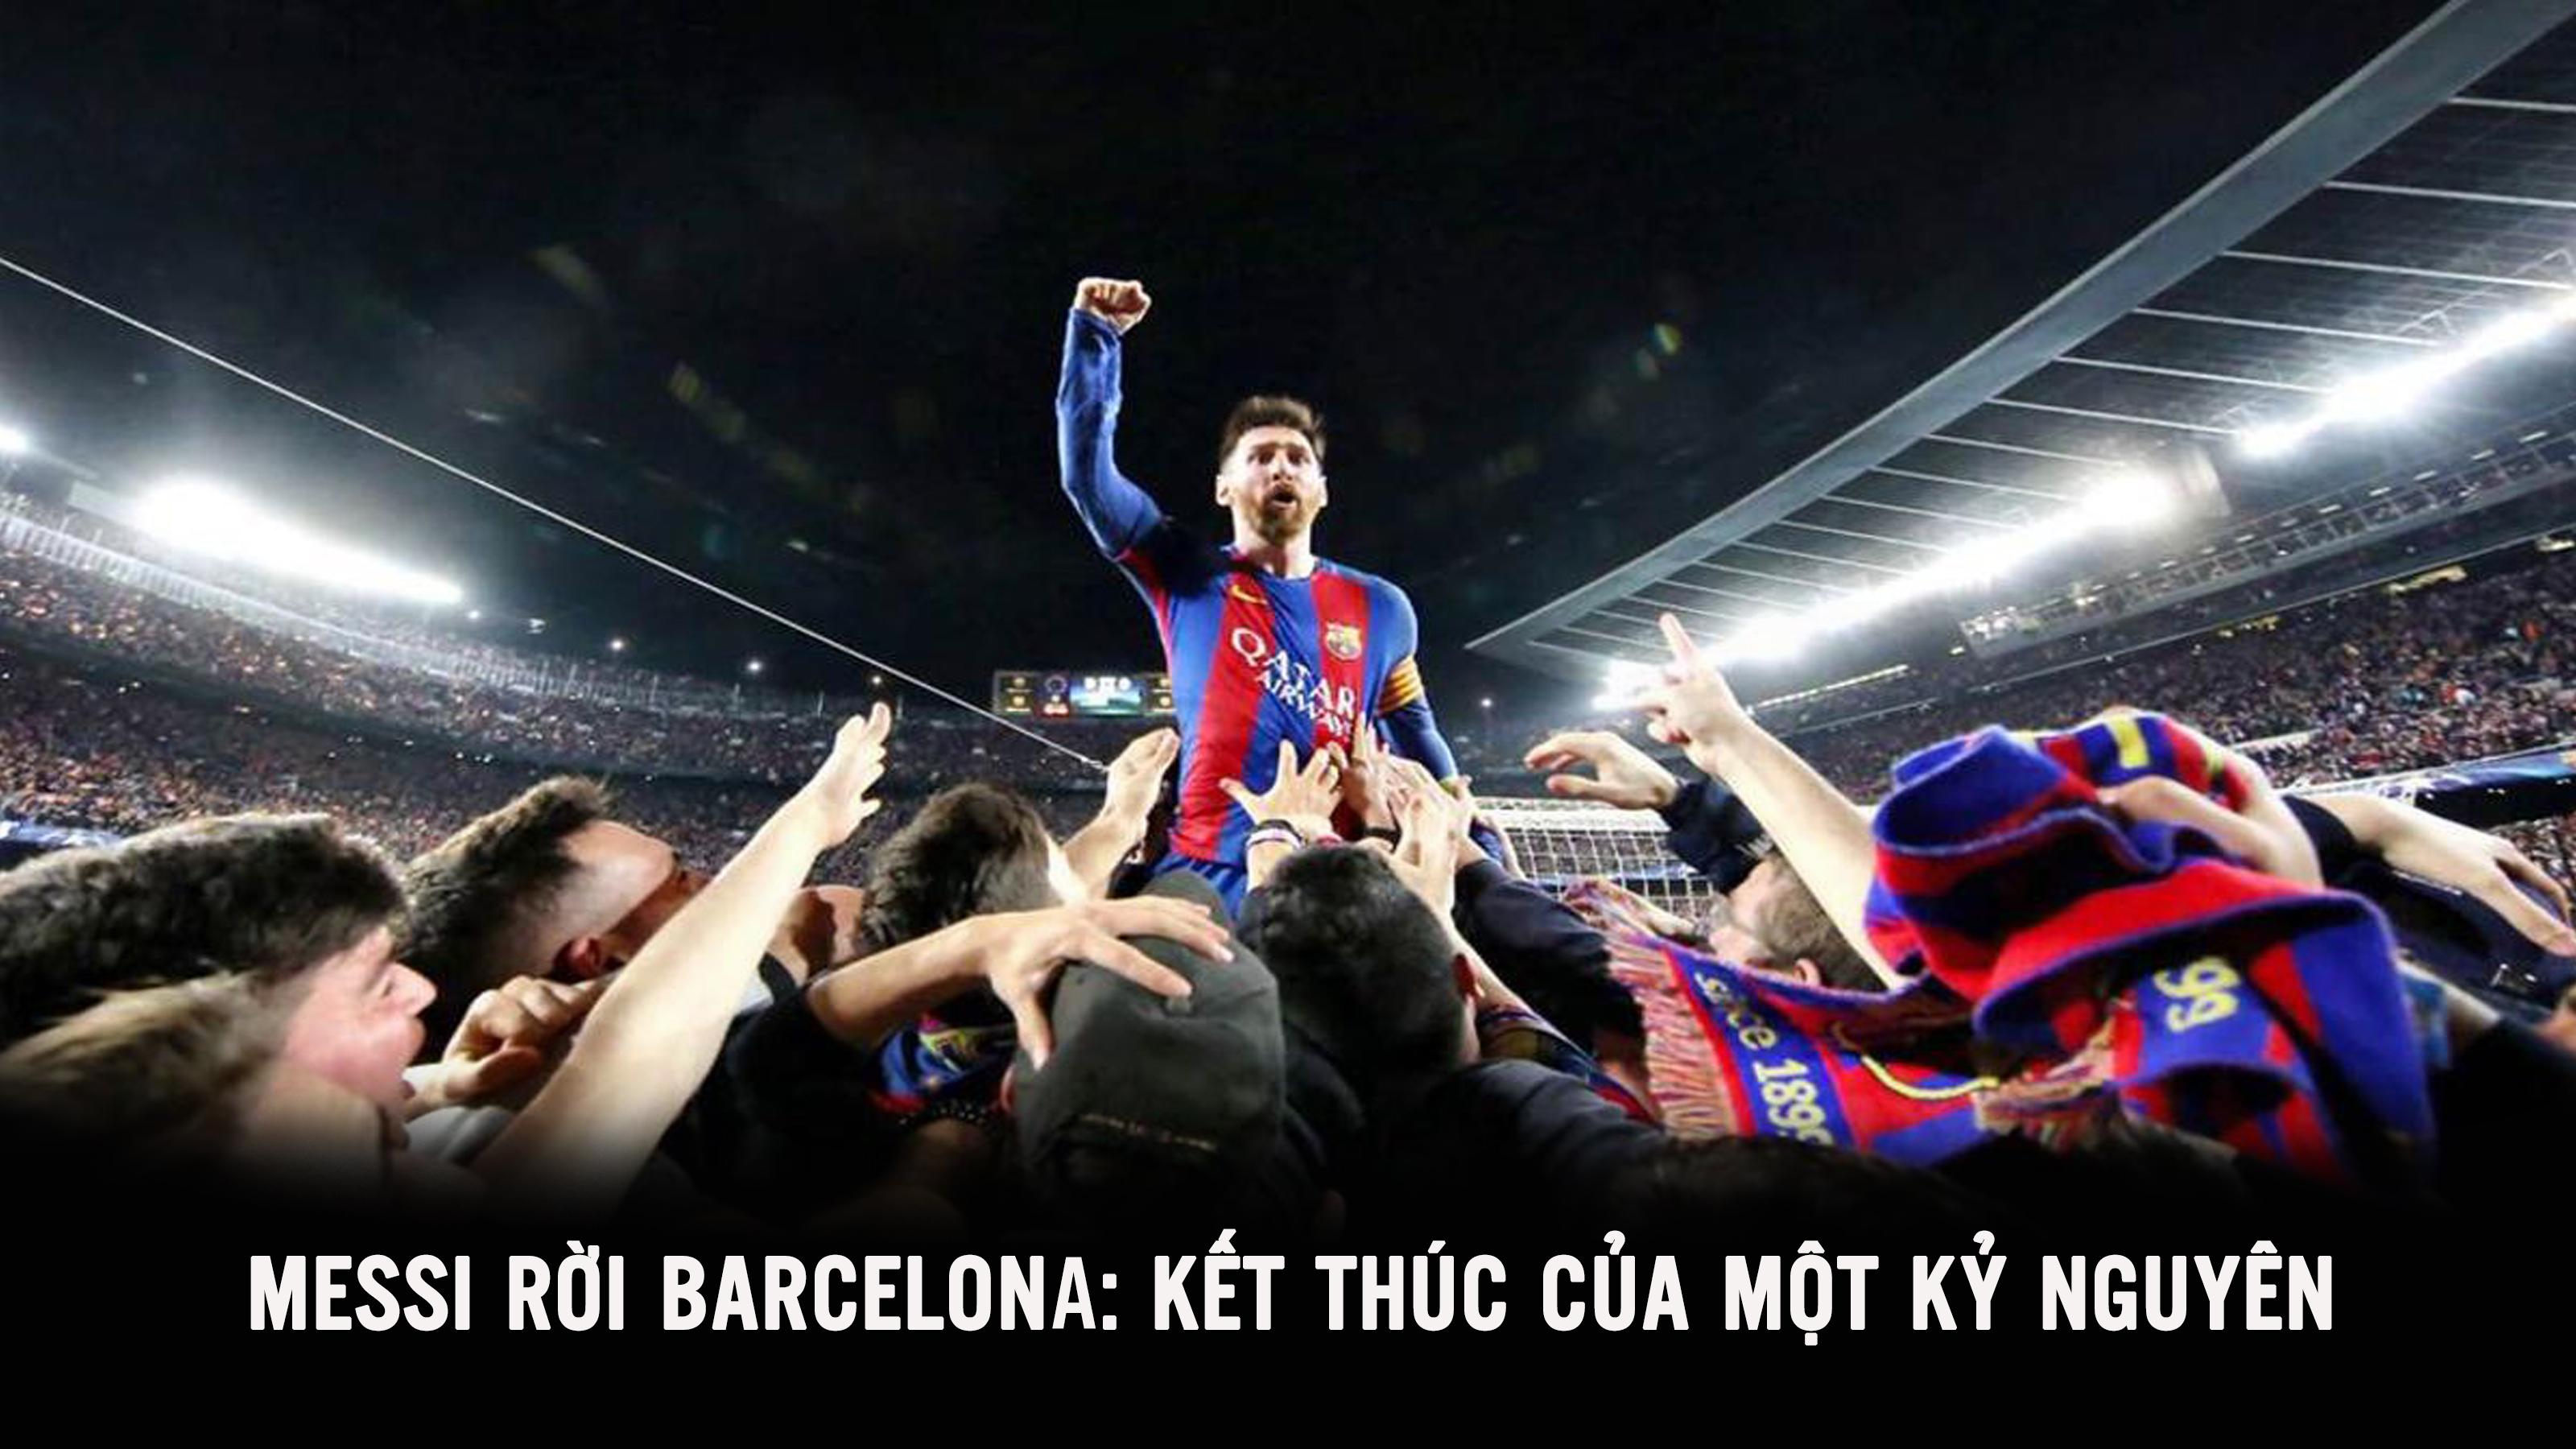 Messi rời Barcelona: Kết thúc của một kỷ nguyên 